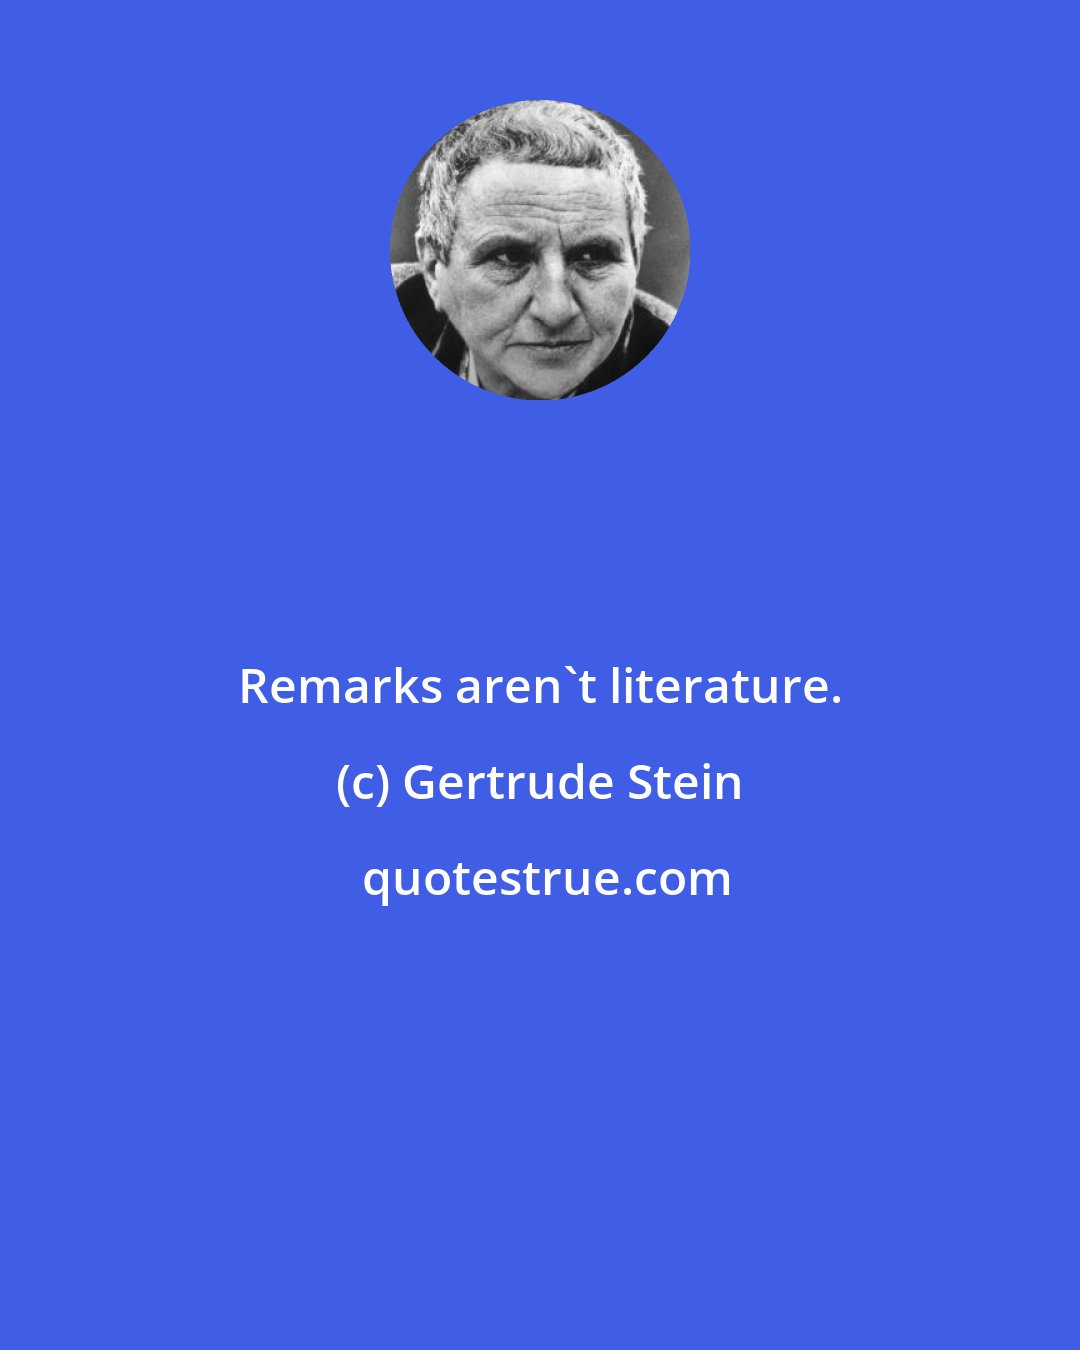 Gertrude Stein: Remarks aren't literature.